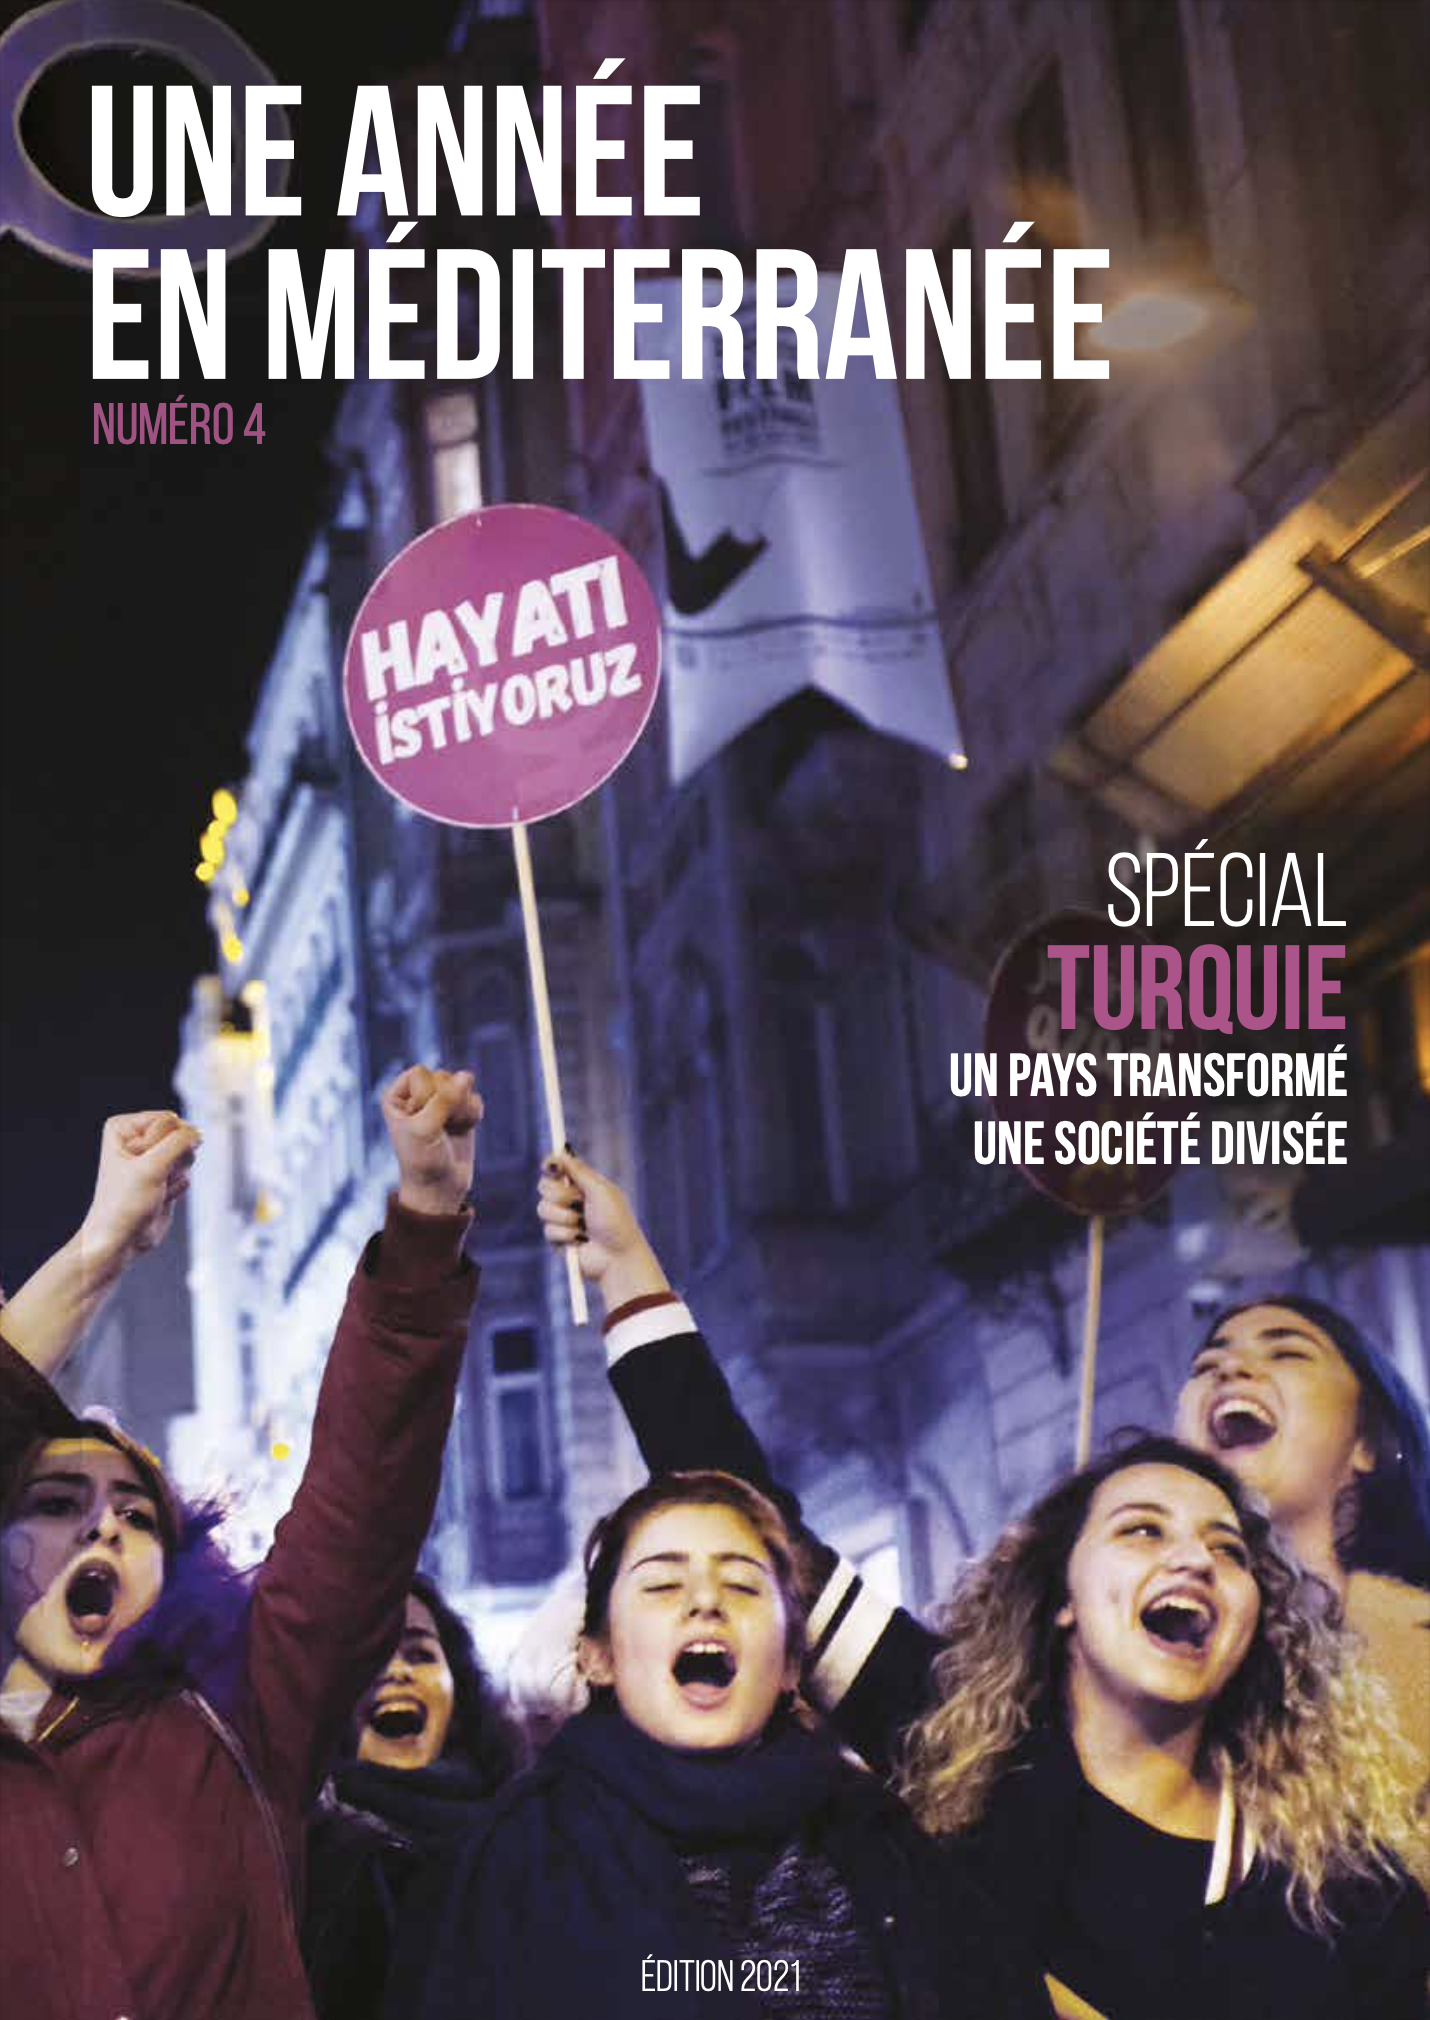 Image from Publications - Une année en Méditerranée (15-38), Numéro 4 - 8 pages